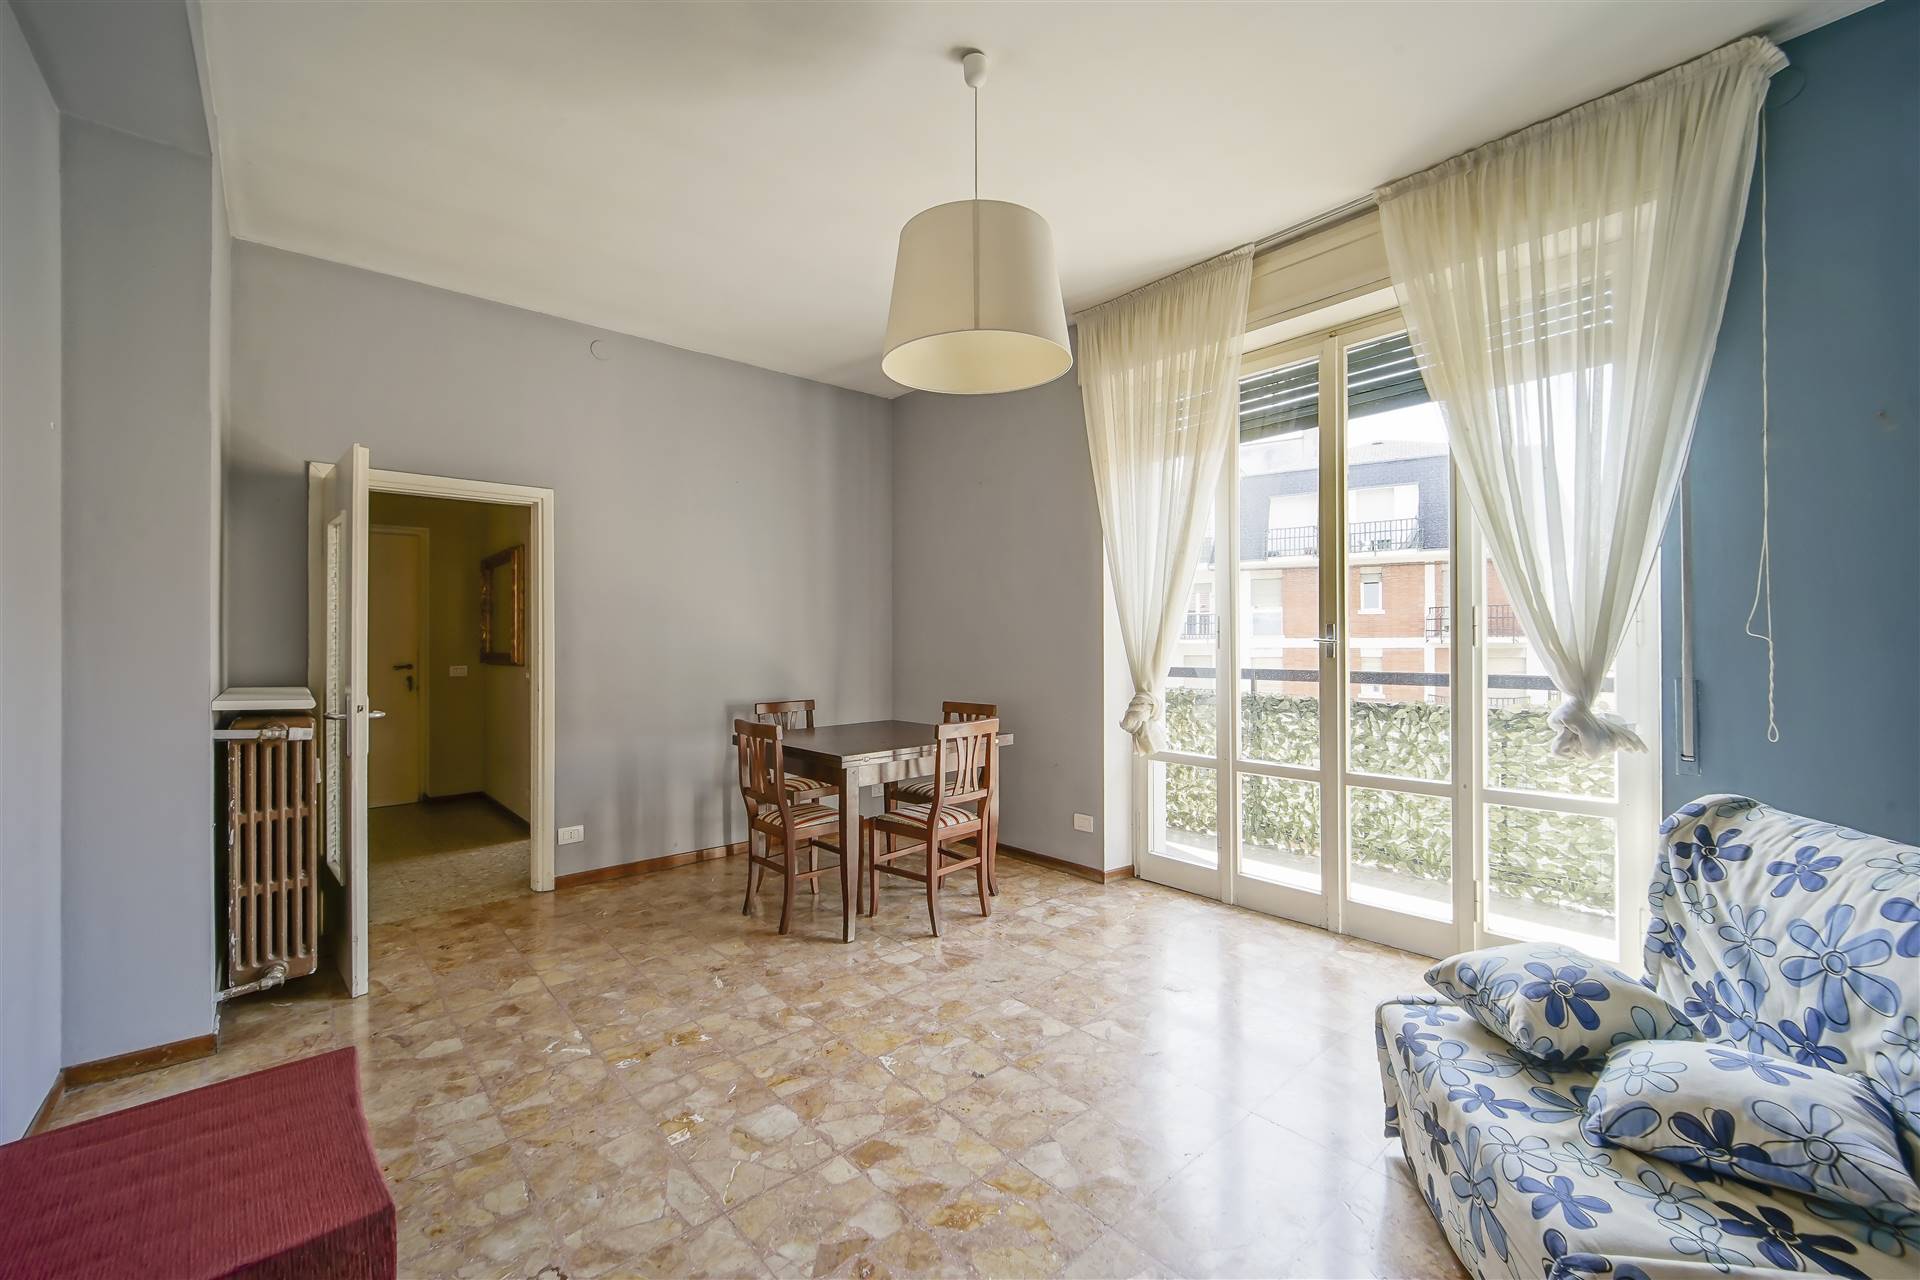 Appartamento in vendita a Lecco, 3 locali, zona Zona: San Giovanni, prezzo € 150.000 | CambioCasa.it